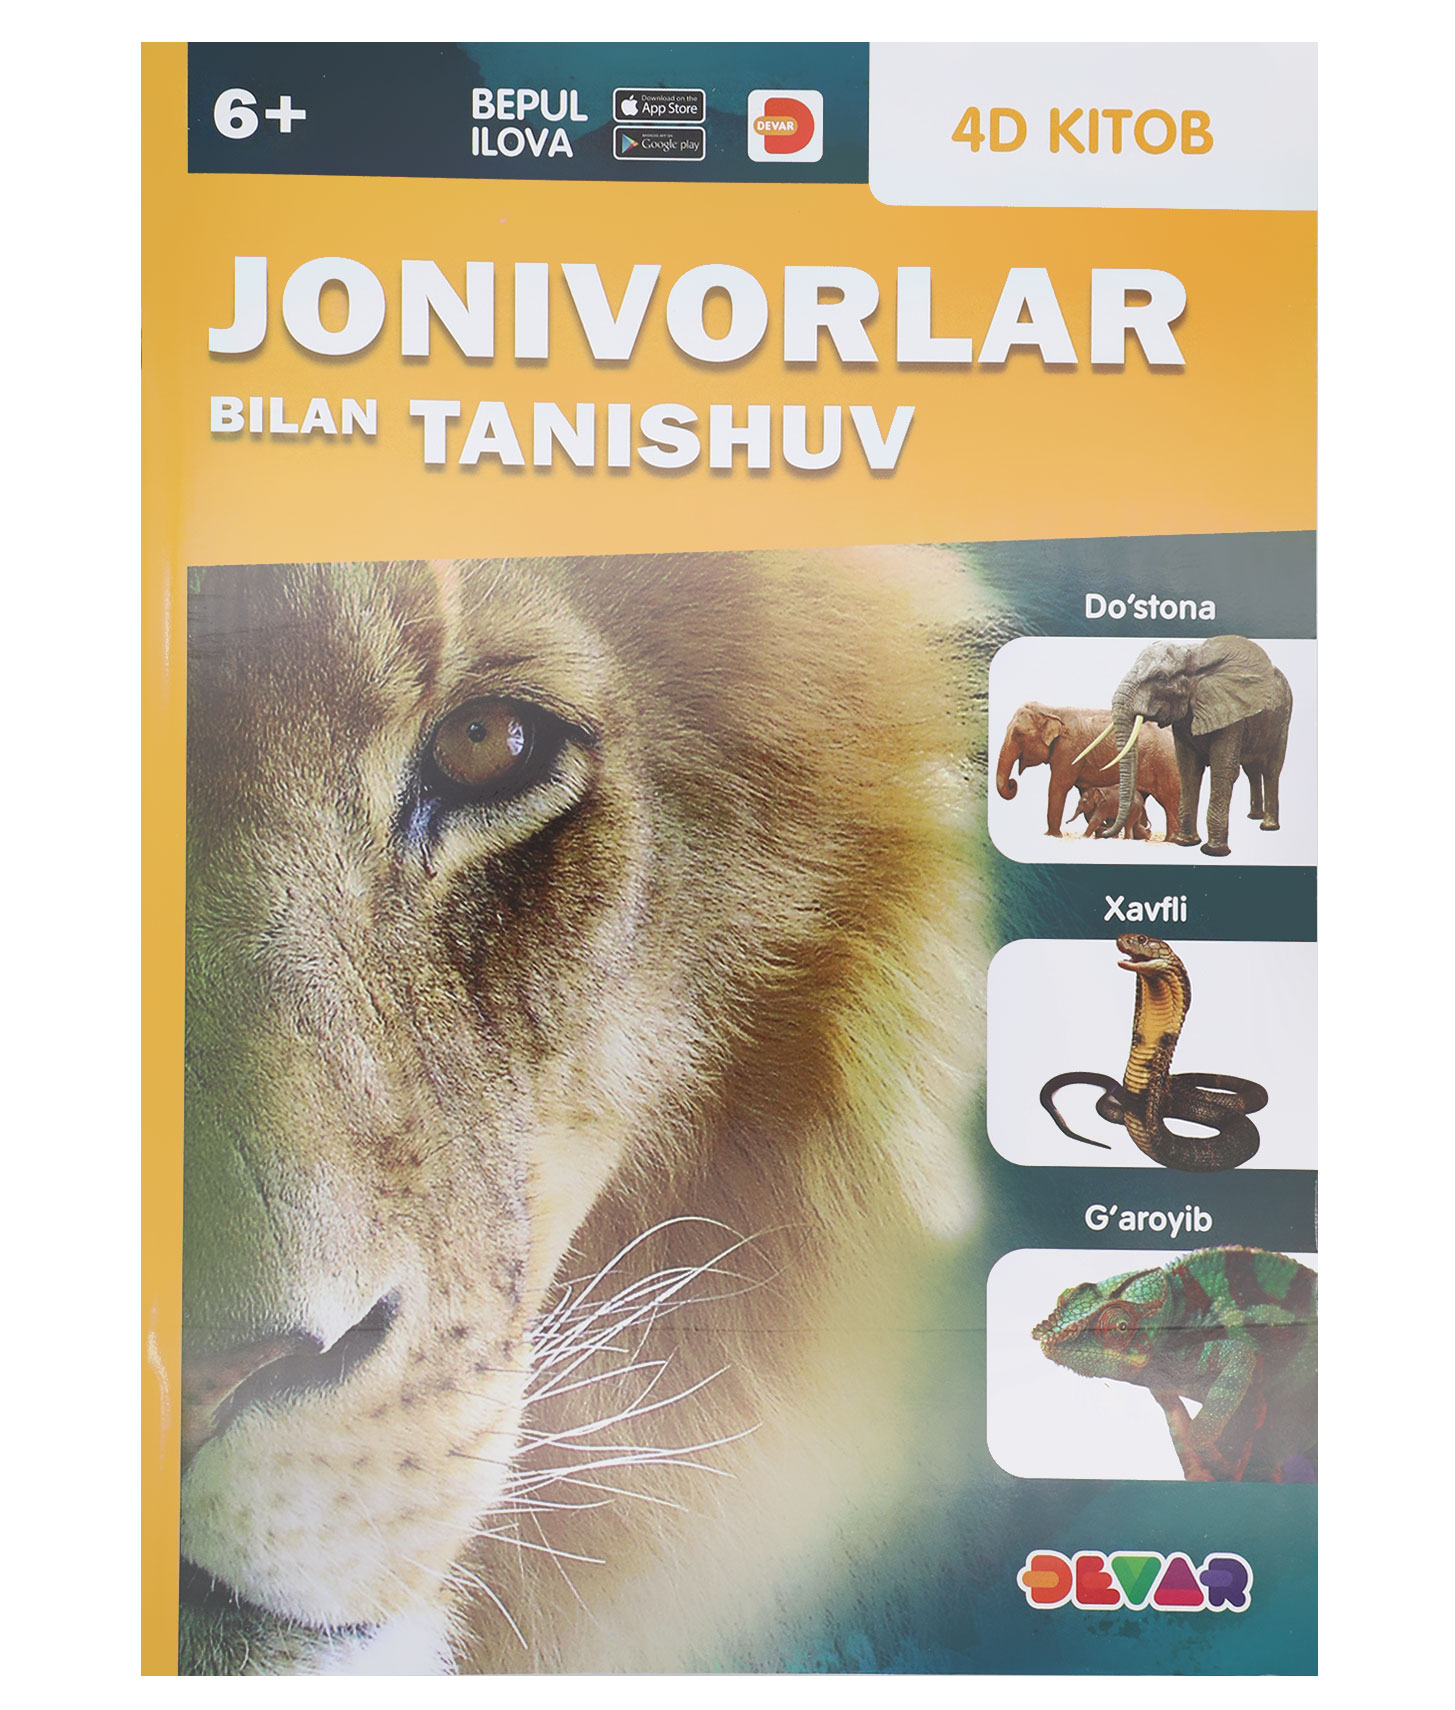 Живая энциклопедия «Jonivorlar bilan tanishiv» (Знакомство с животными) на узбекском языке Devar